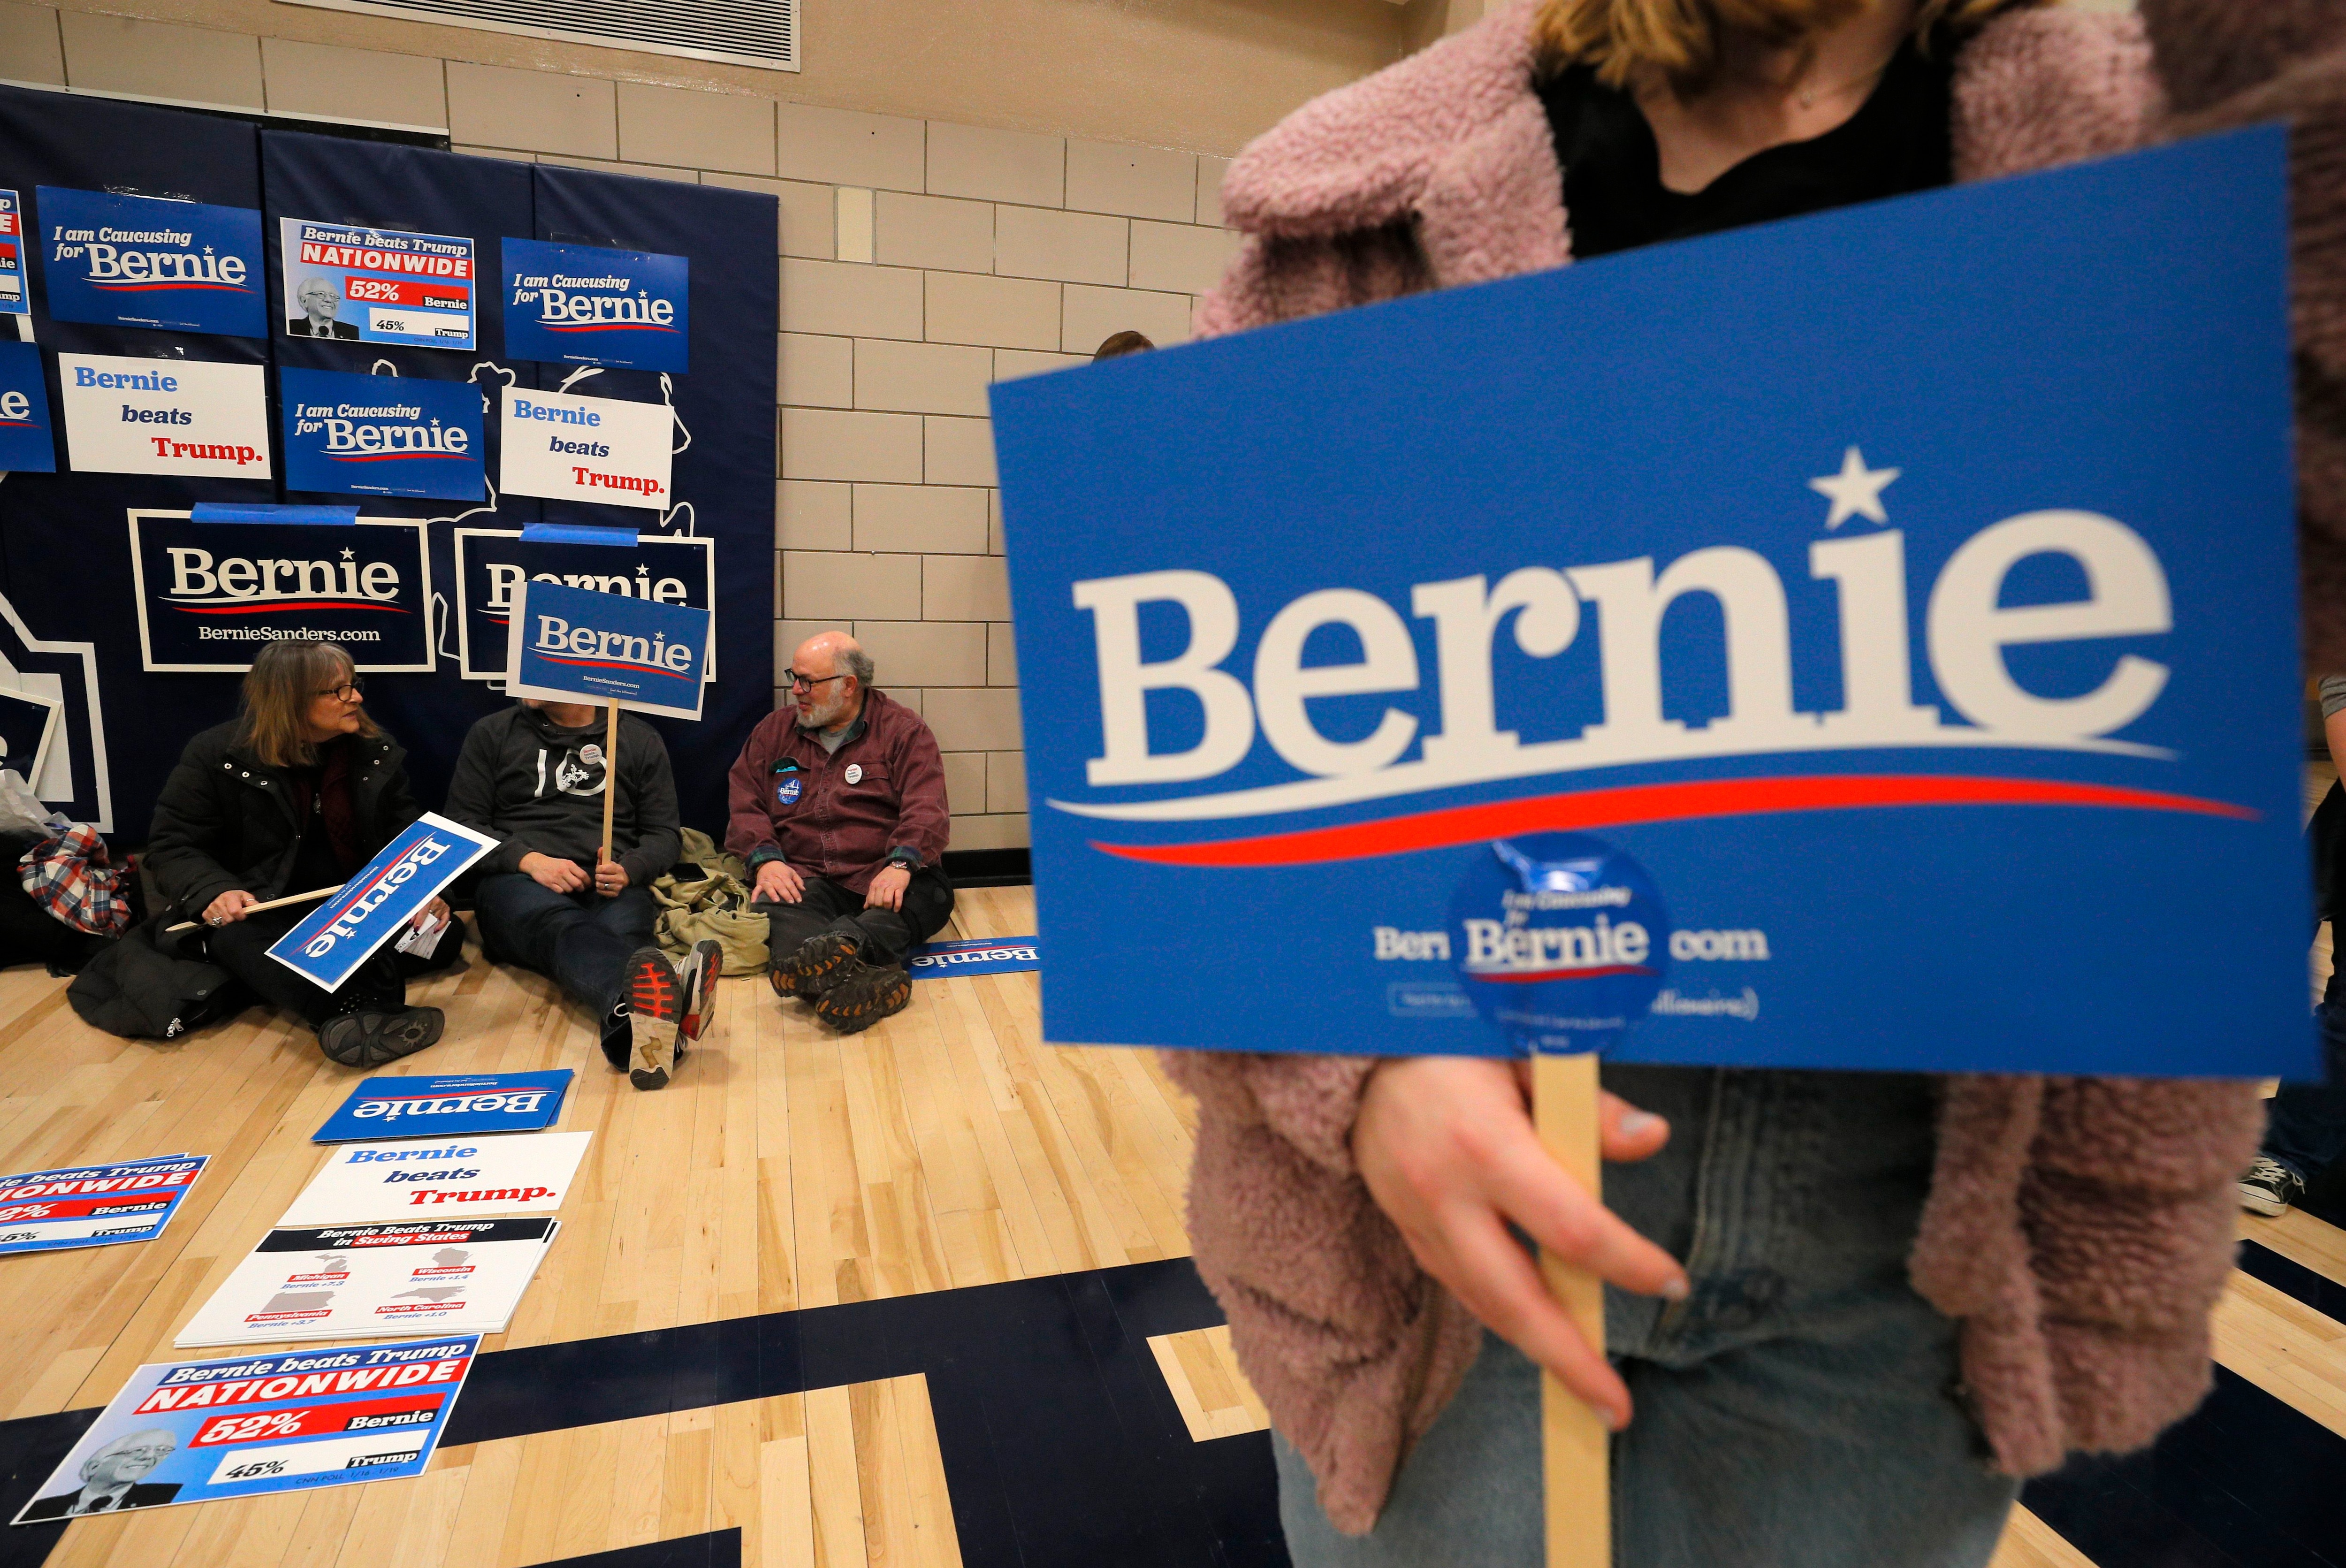 Los partidarios del candidato presidencial demócrata Bernie Sanders se reúnen en Des Moines, Iowa (REUTERS / Brian Snyder)